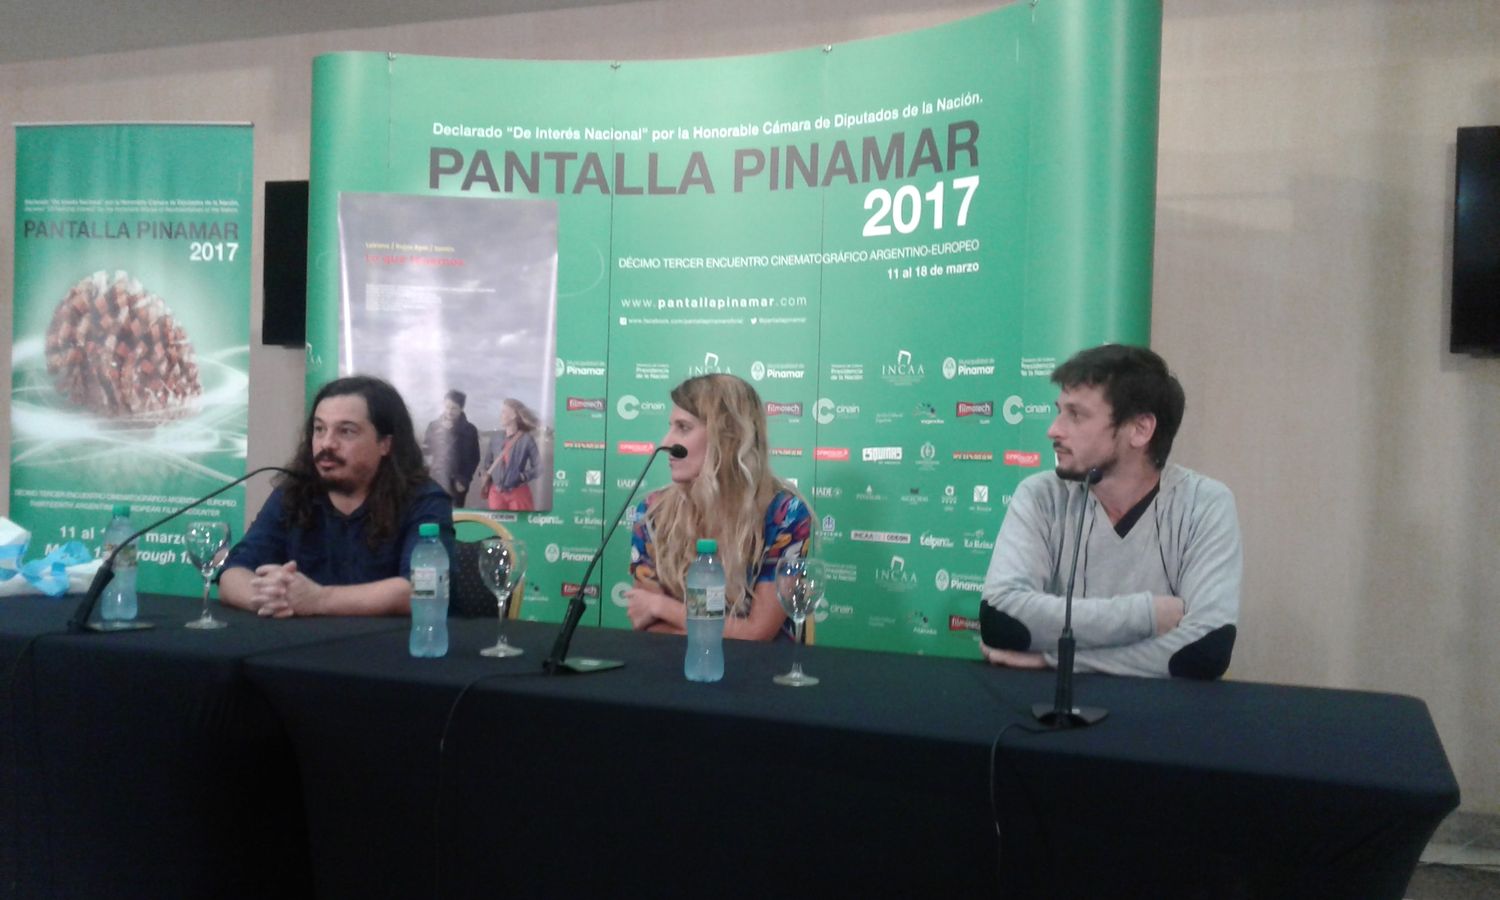 Pantalla Pinamar 2017 día 3: lagañas, conferencias y una pregunta larga, larga